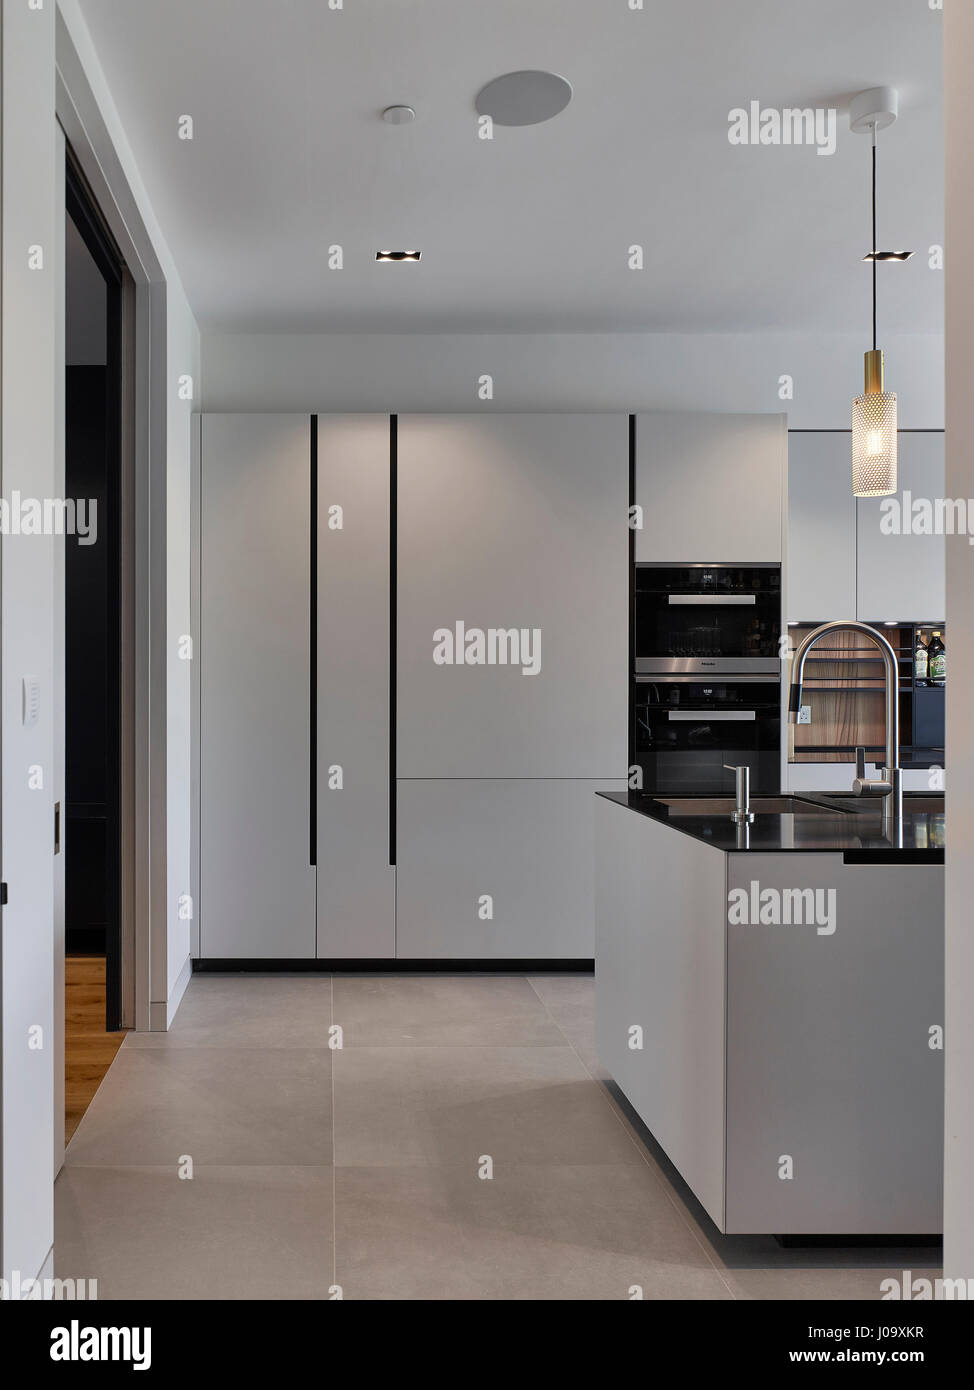 Küche. Hampstead Teiche House, London, Vereinigtes Königreich. Architekt: Steif + Trevillion Architekten, 2016. Stockfoto